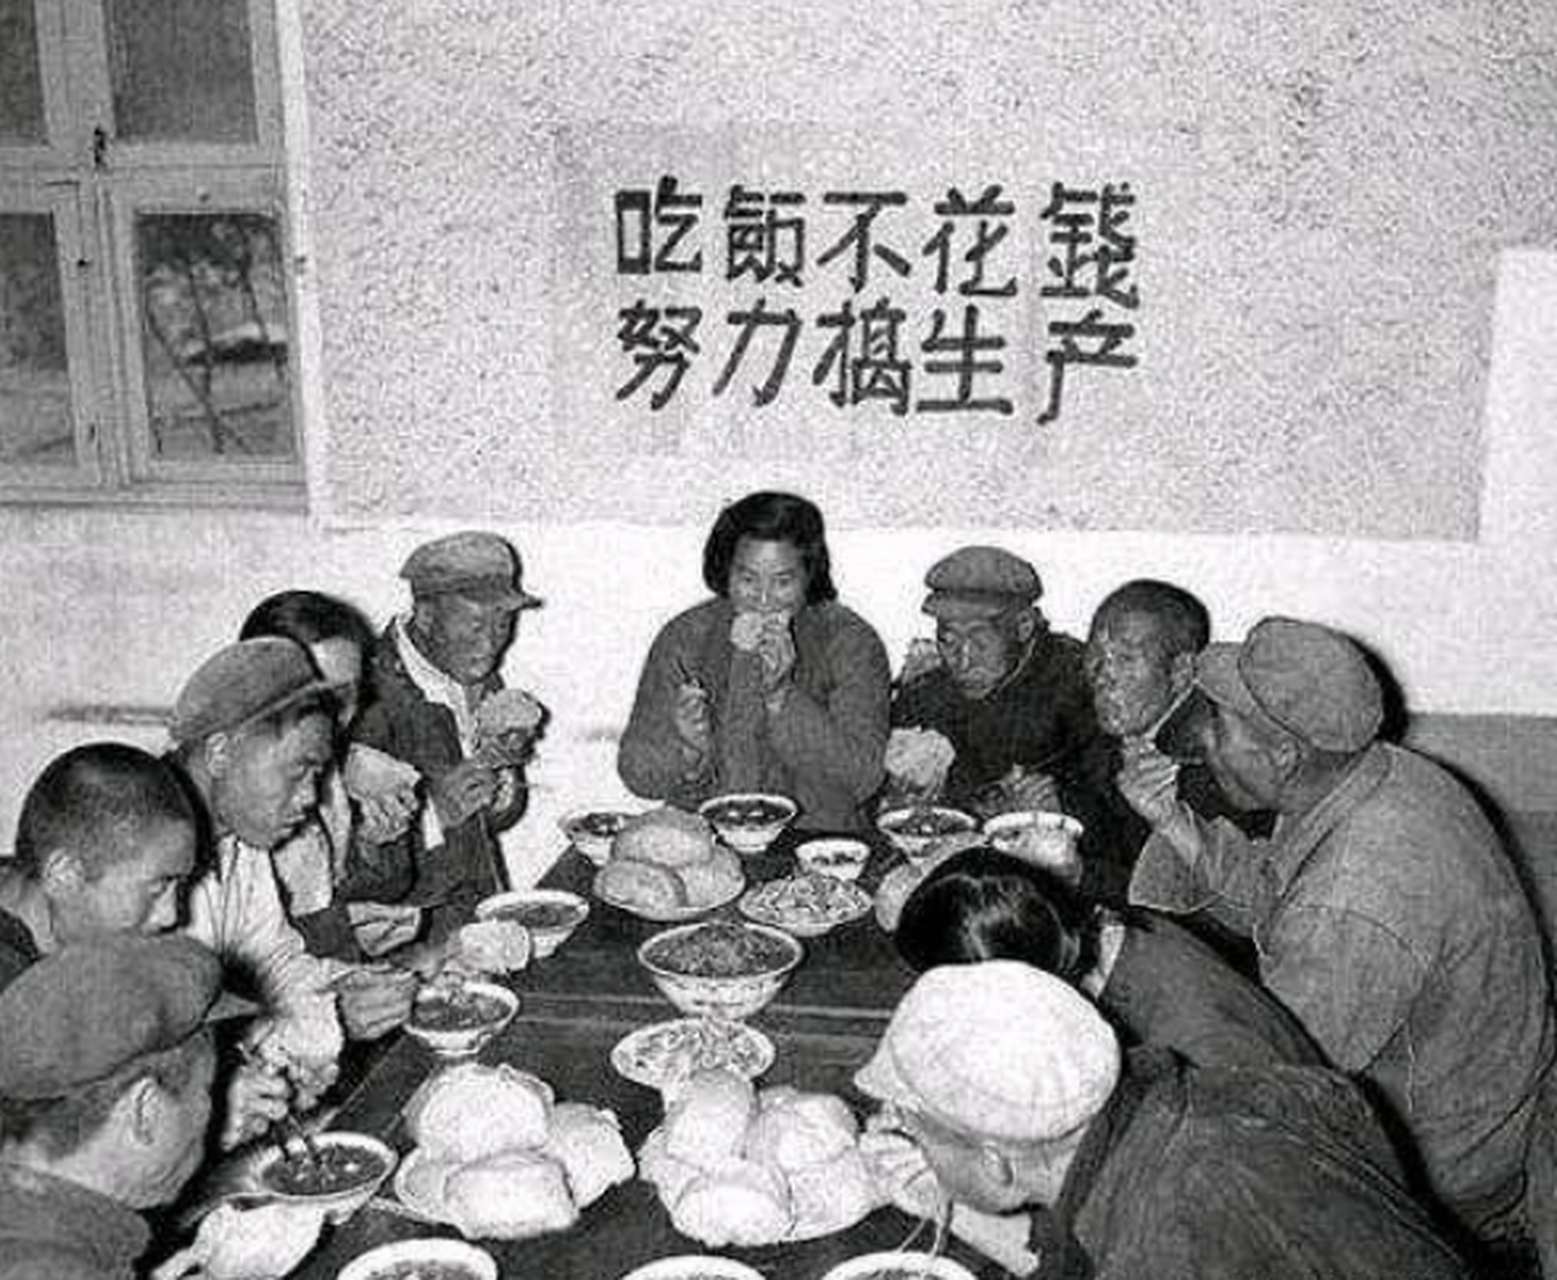 历史老照片: 上世纪五十年代,大集体公社食堂中吃饭的一幕